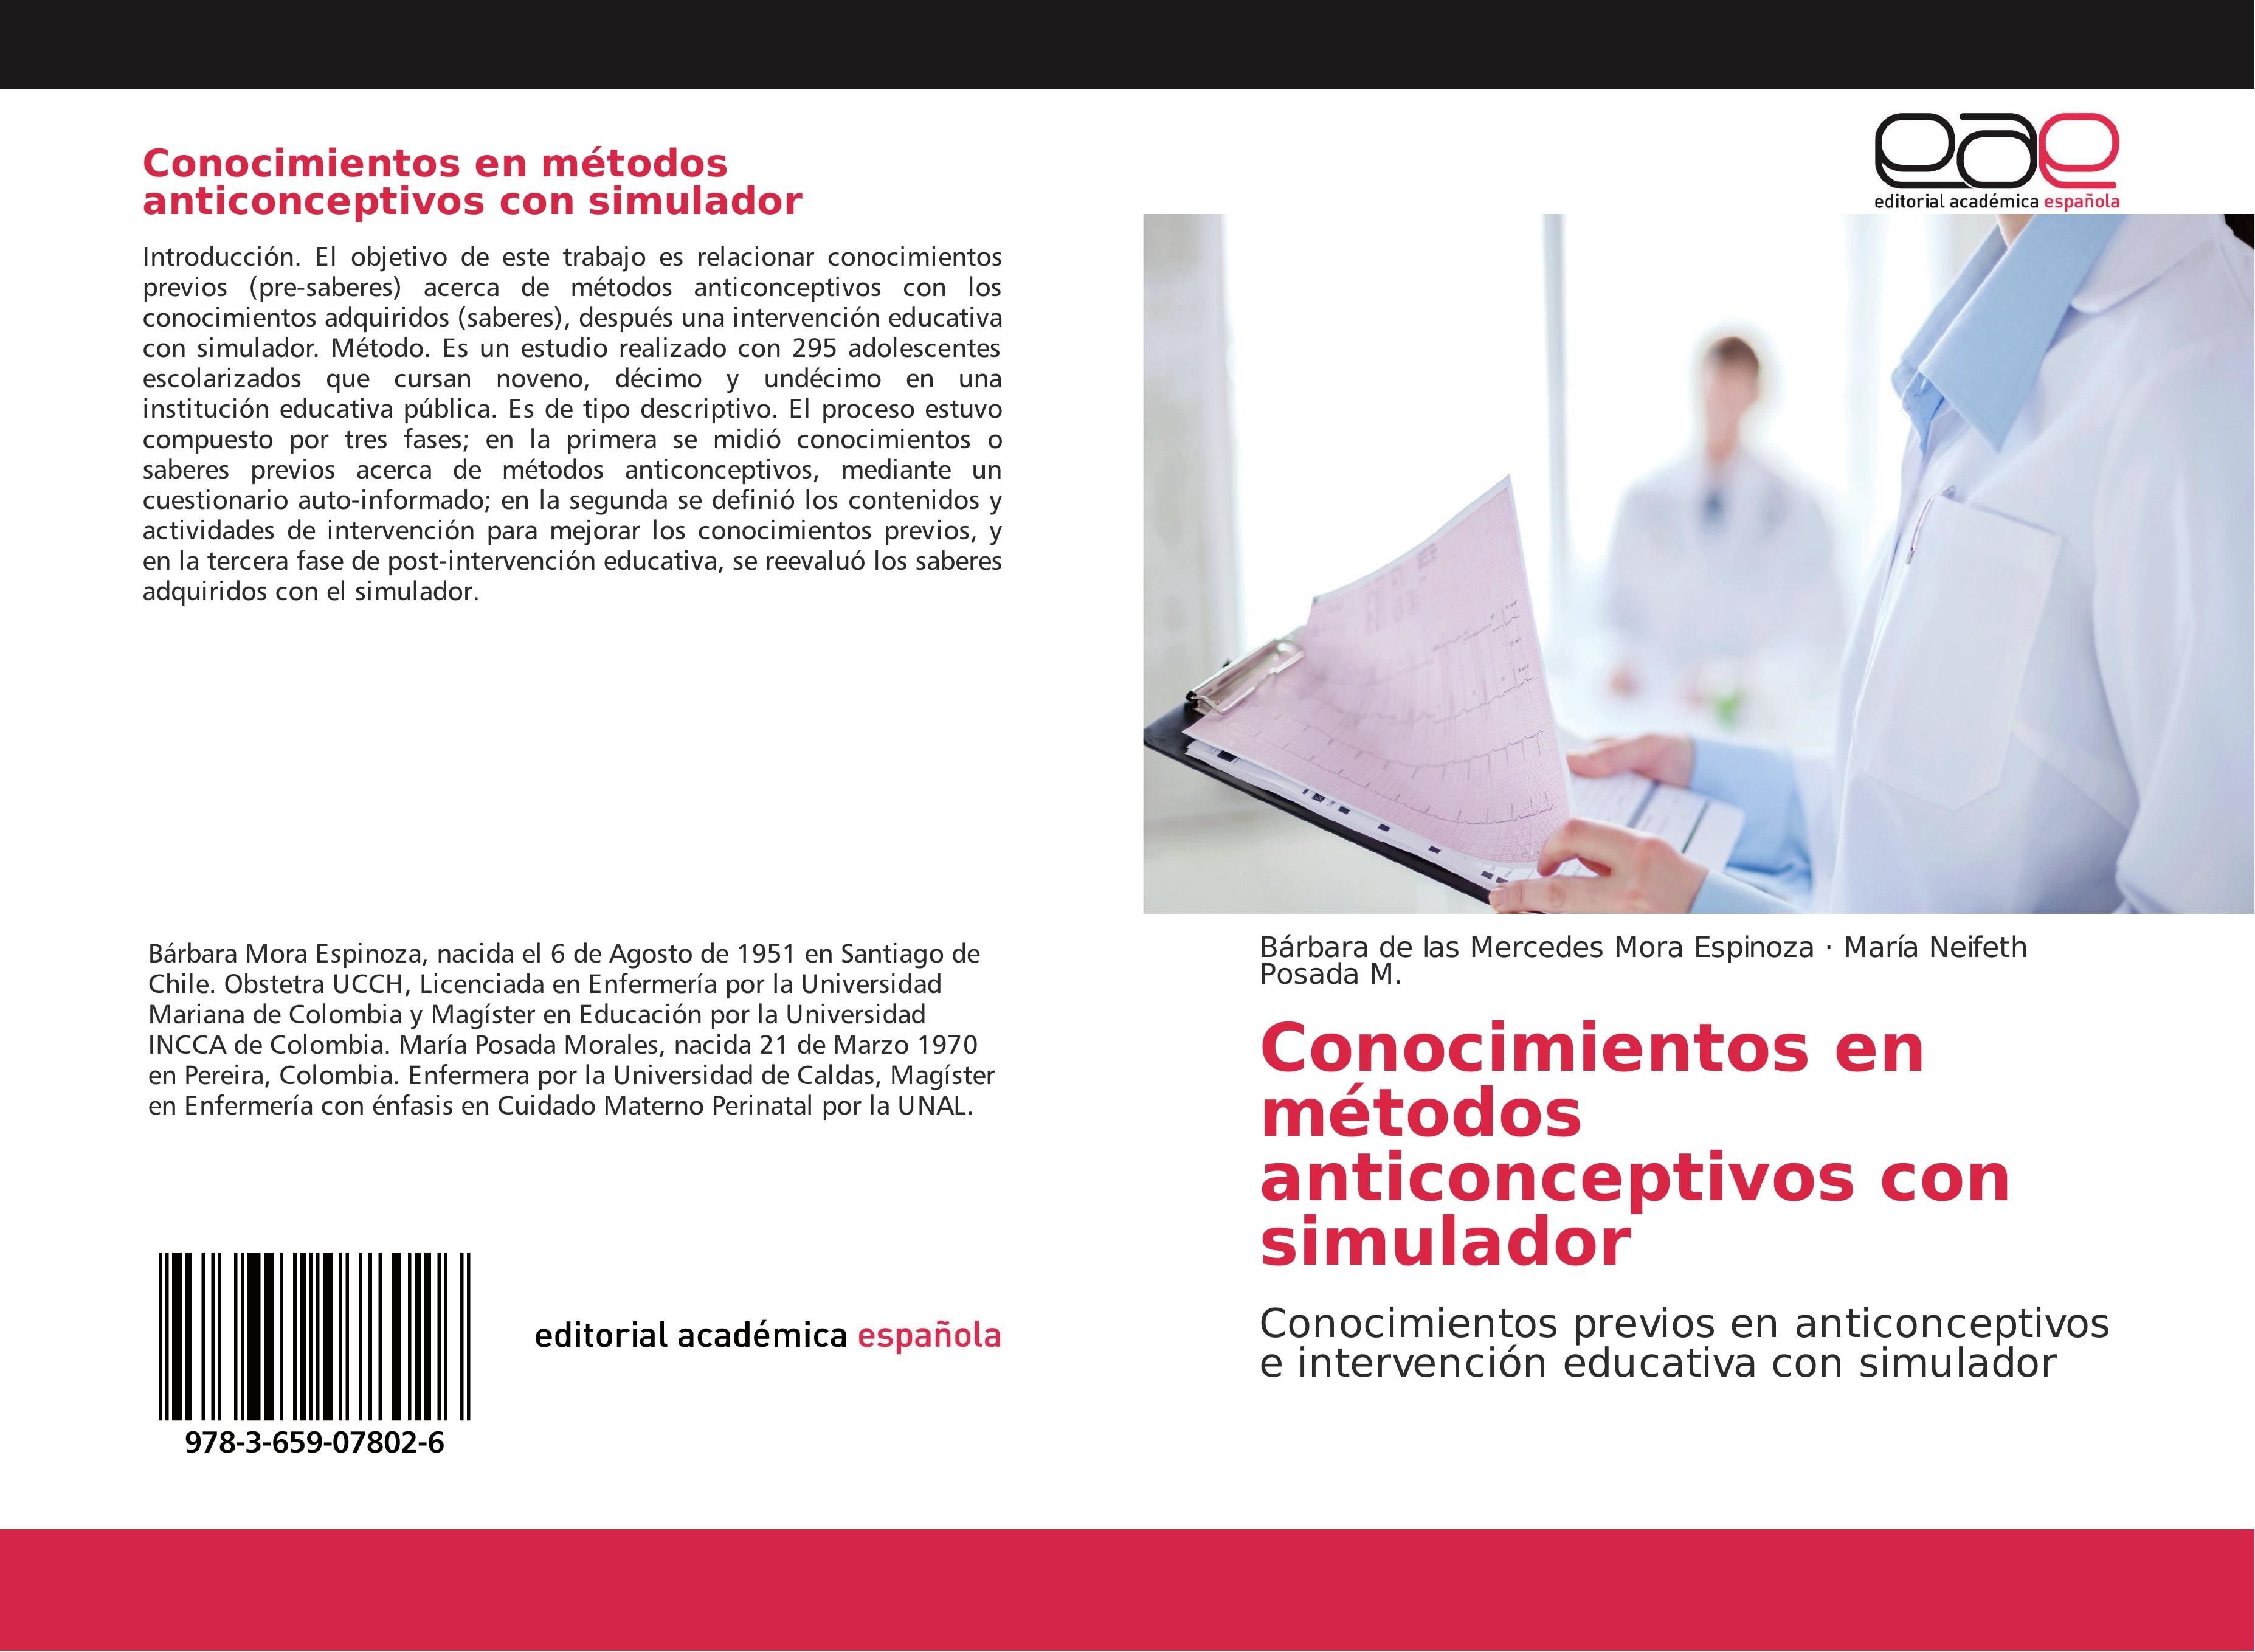 Conocimientos en métodos anticonceptivos con simulador - Bárbara de las Mercedes Mora Espinoza María Neifeth Posada M.